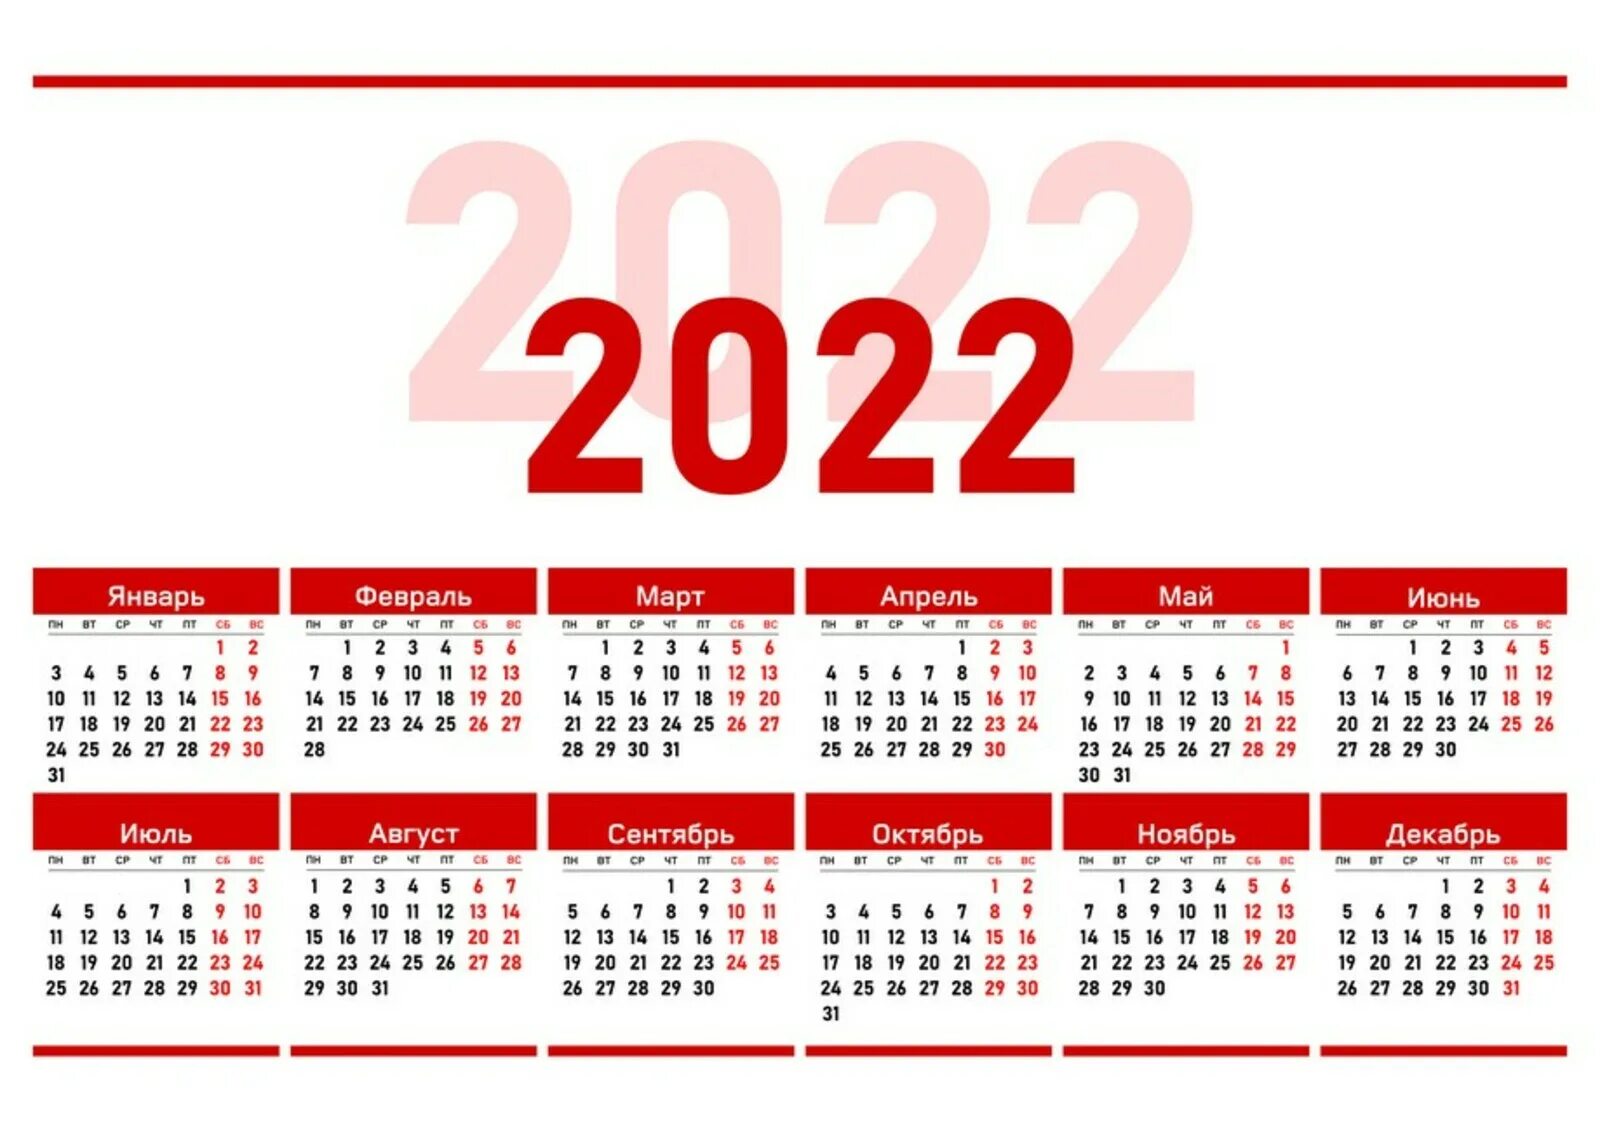 Послезавтра какая неделя. Производственный календарь 2022. Календарь на 2022 год ЛНР. Официальные праздники 2022 года в России. Выходные дни в 2022 году в России.